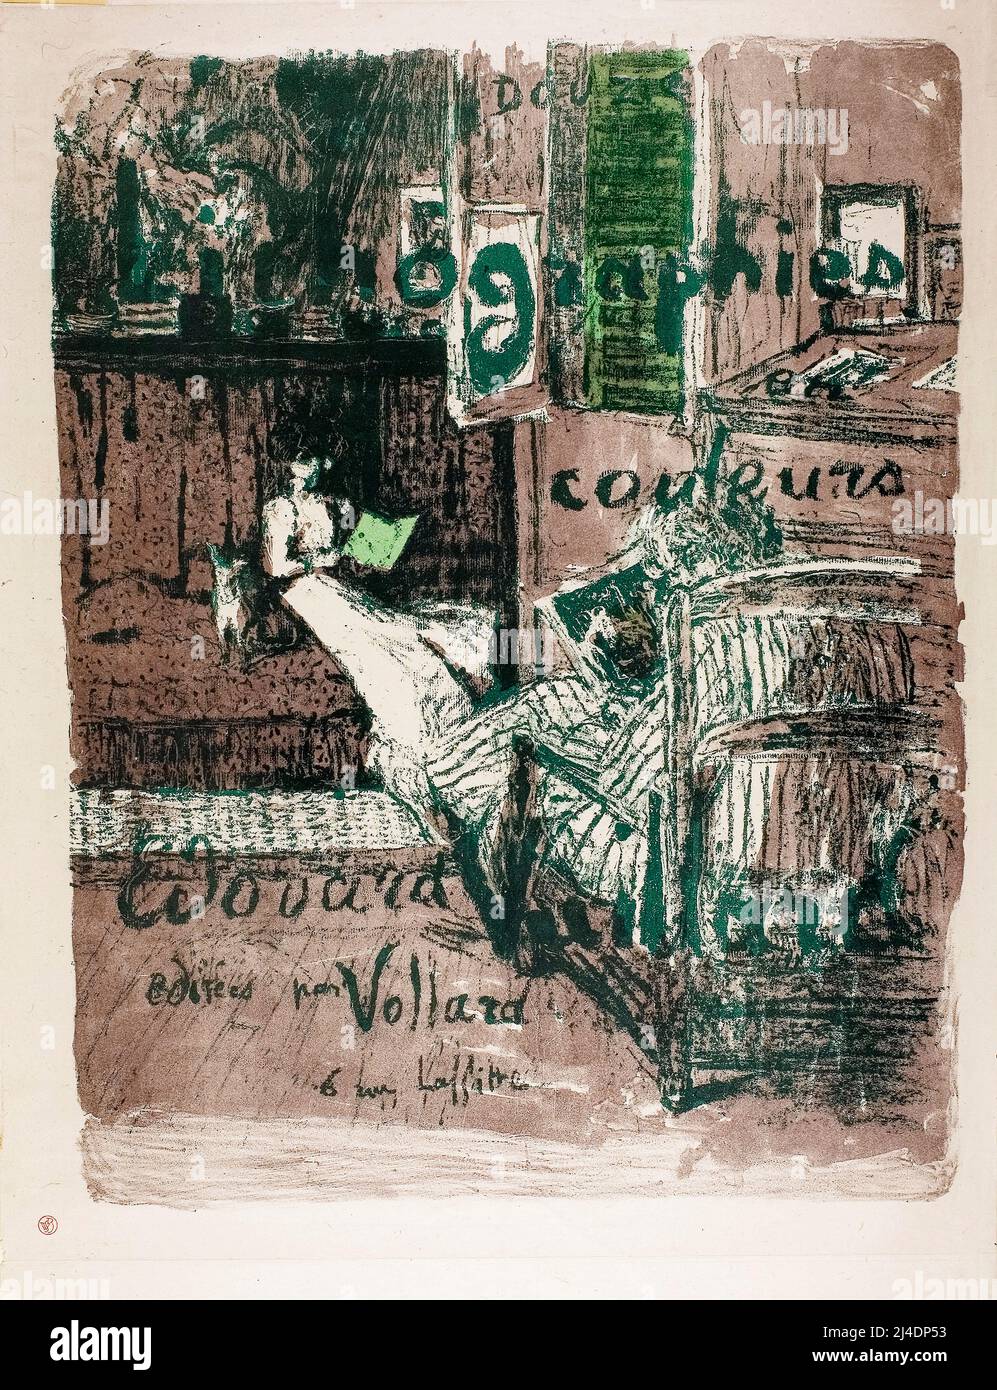 Portada del álbum 'Paisajes e interiores', impresión litográfica de Édouard Vuillard, 1899 Foto de stock